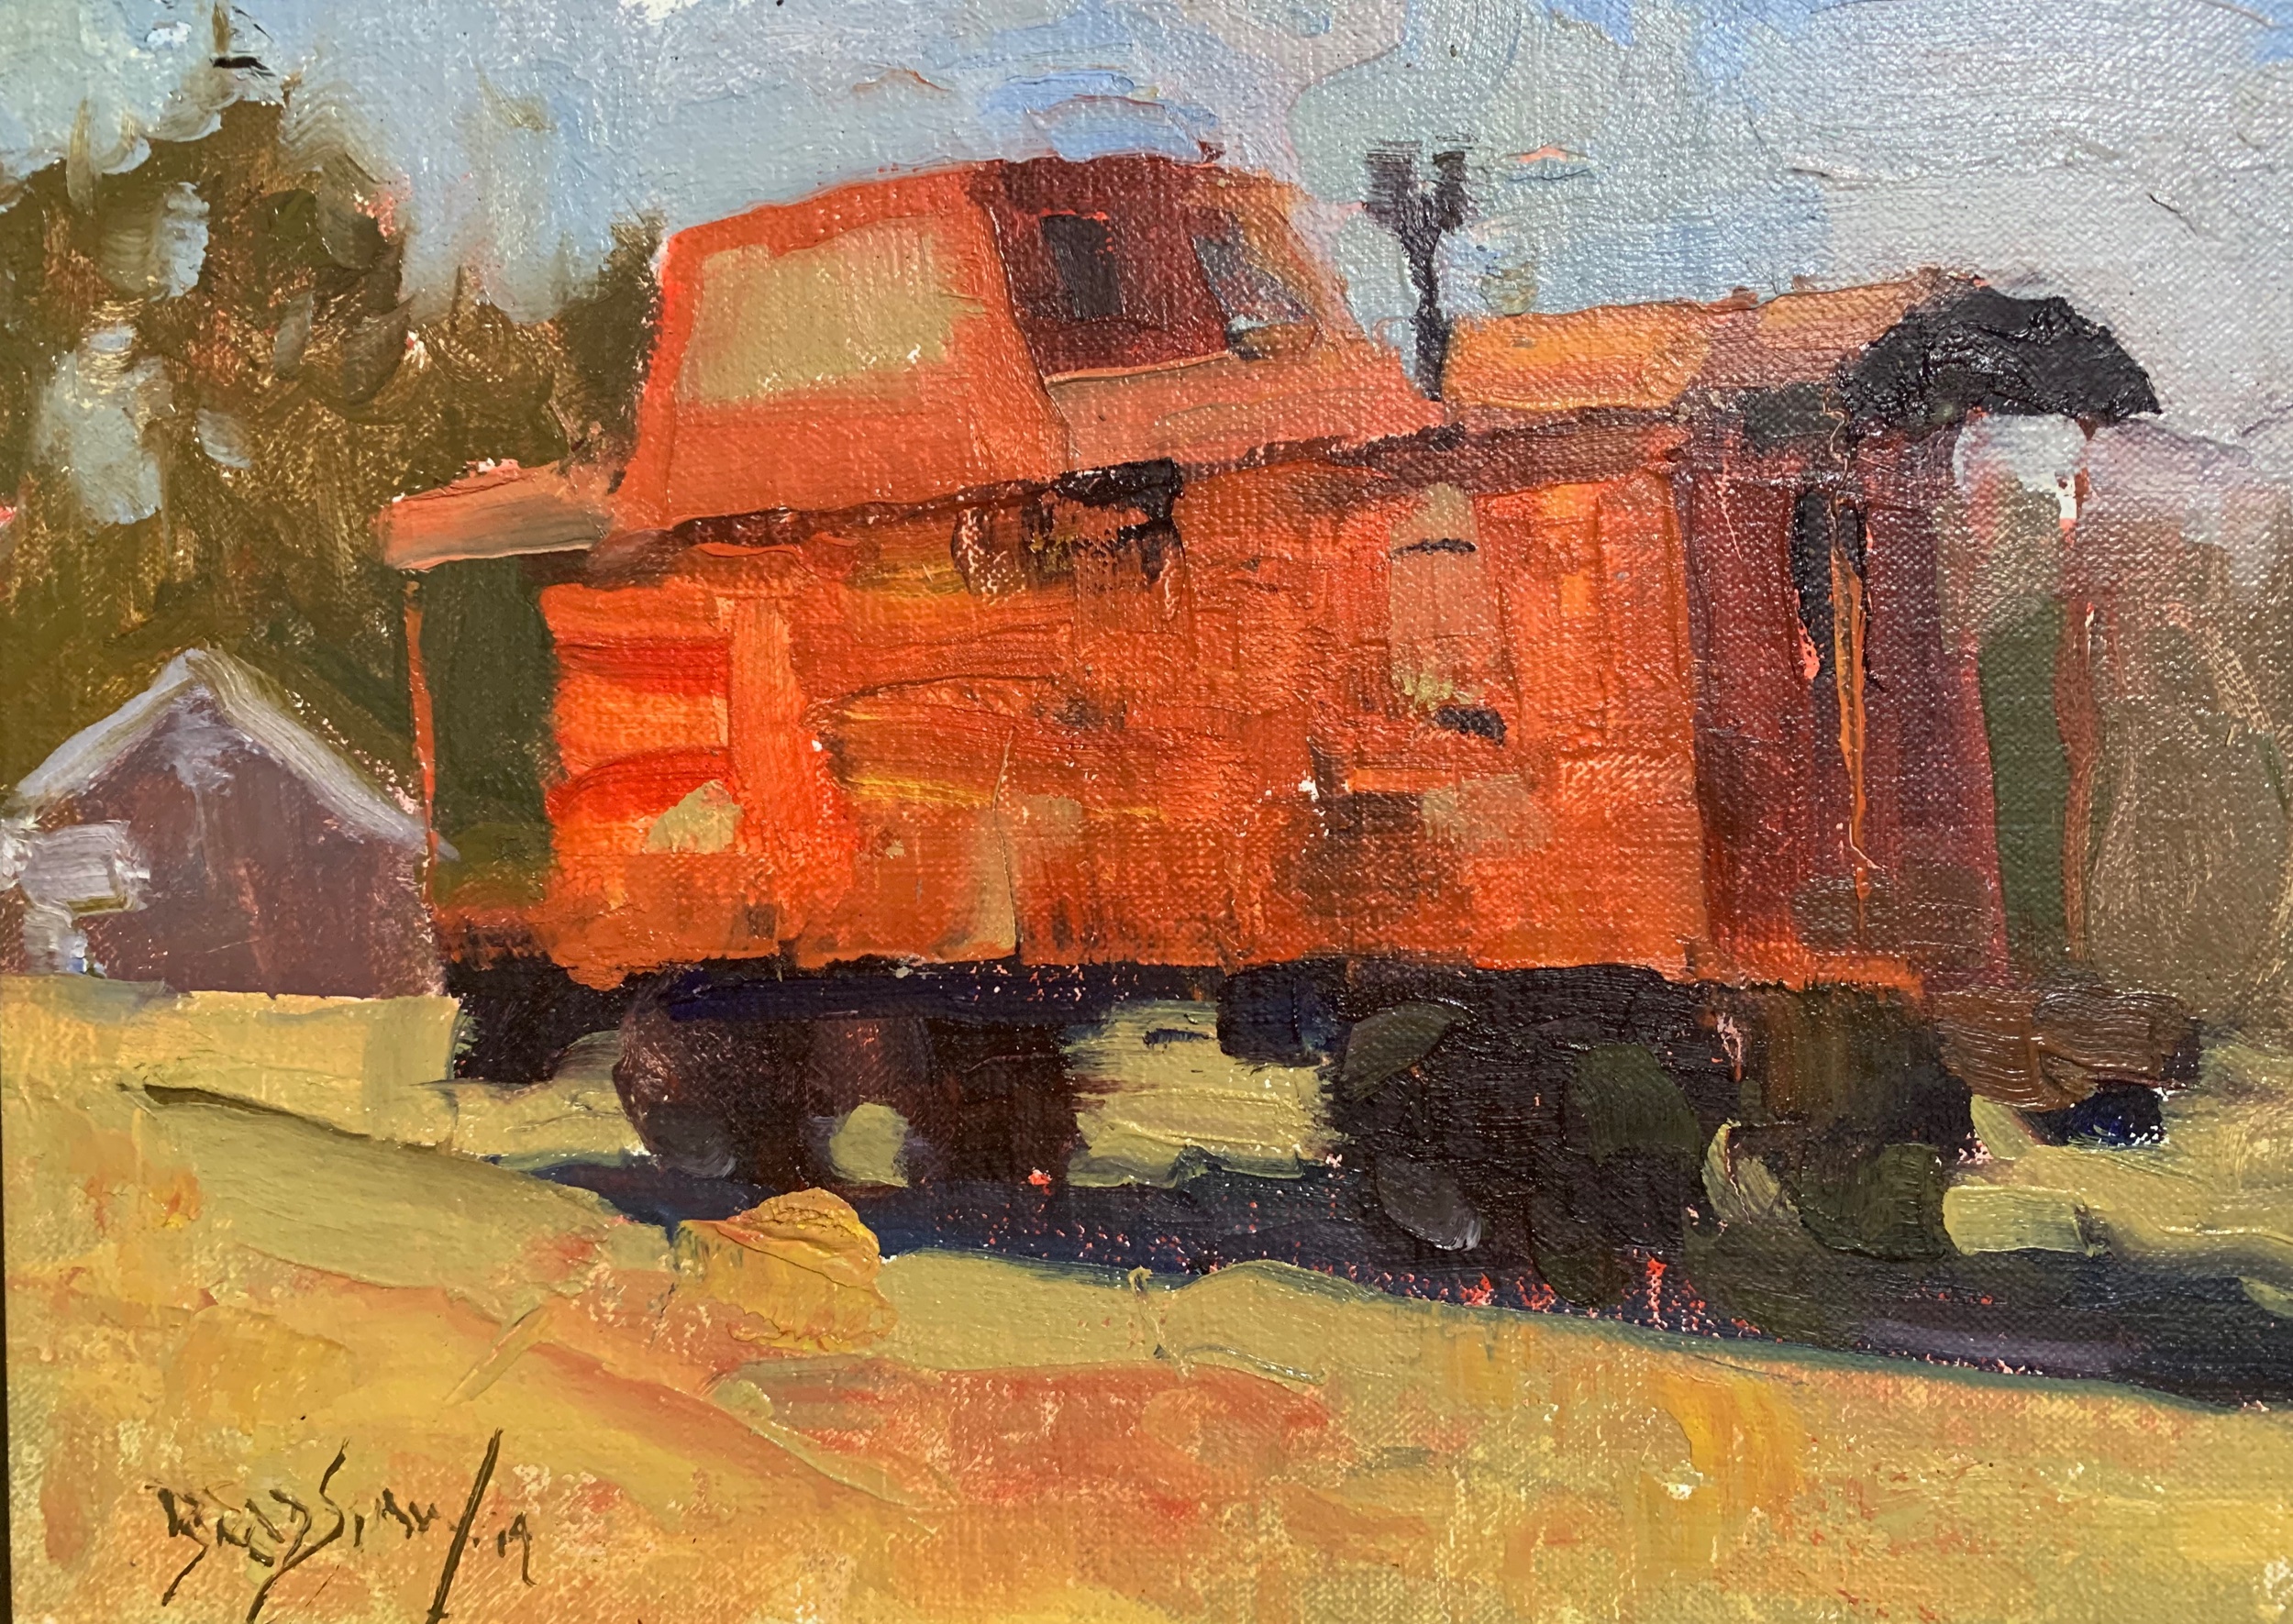 Thomas Bradshaw’s caboose painting